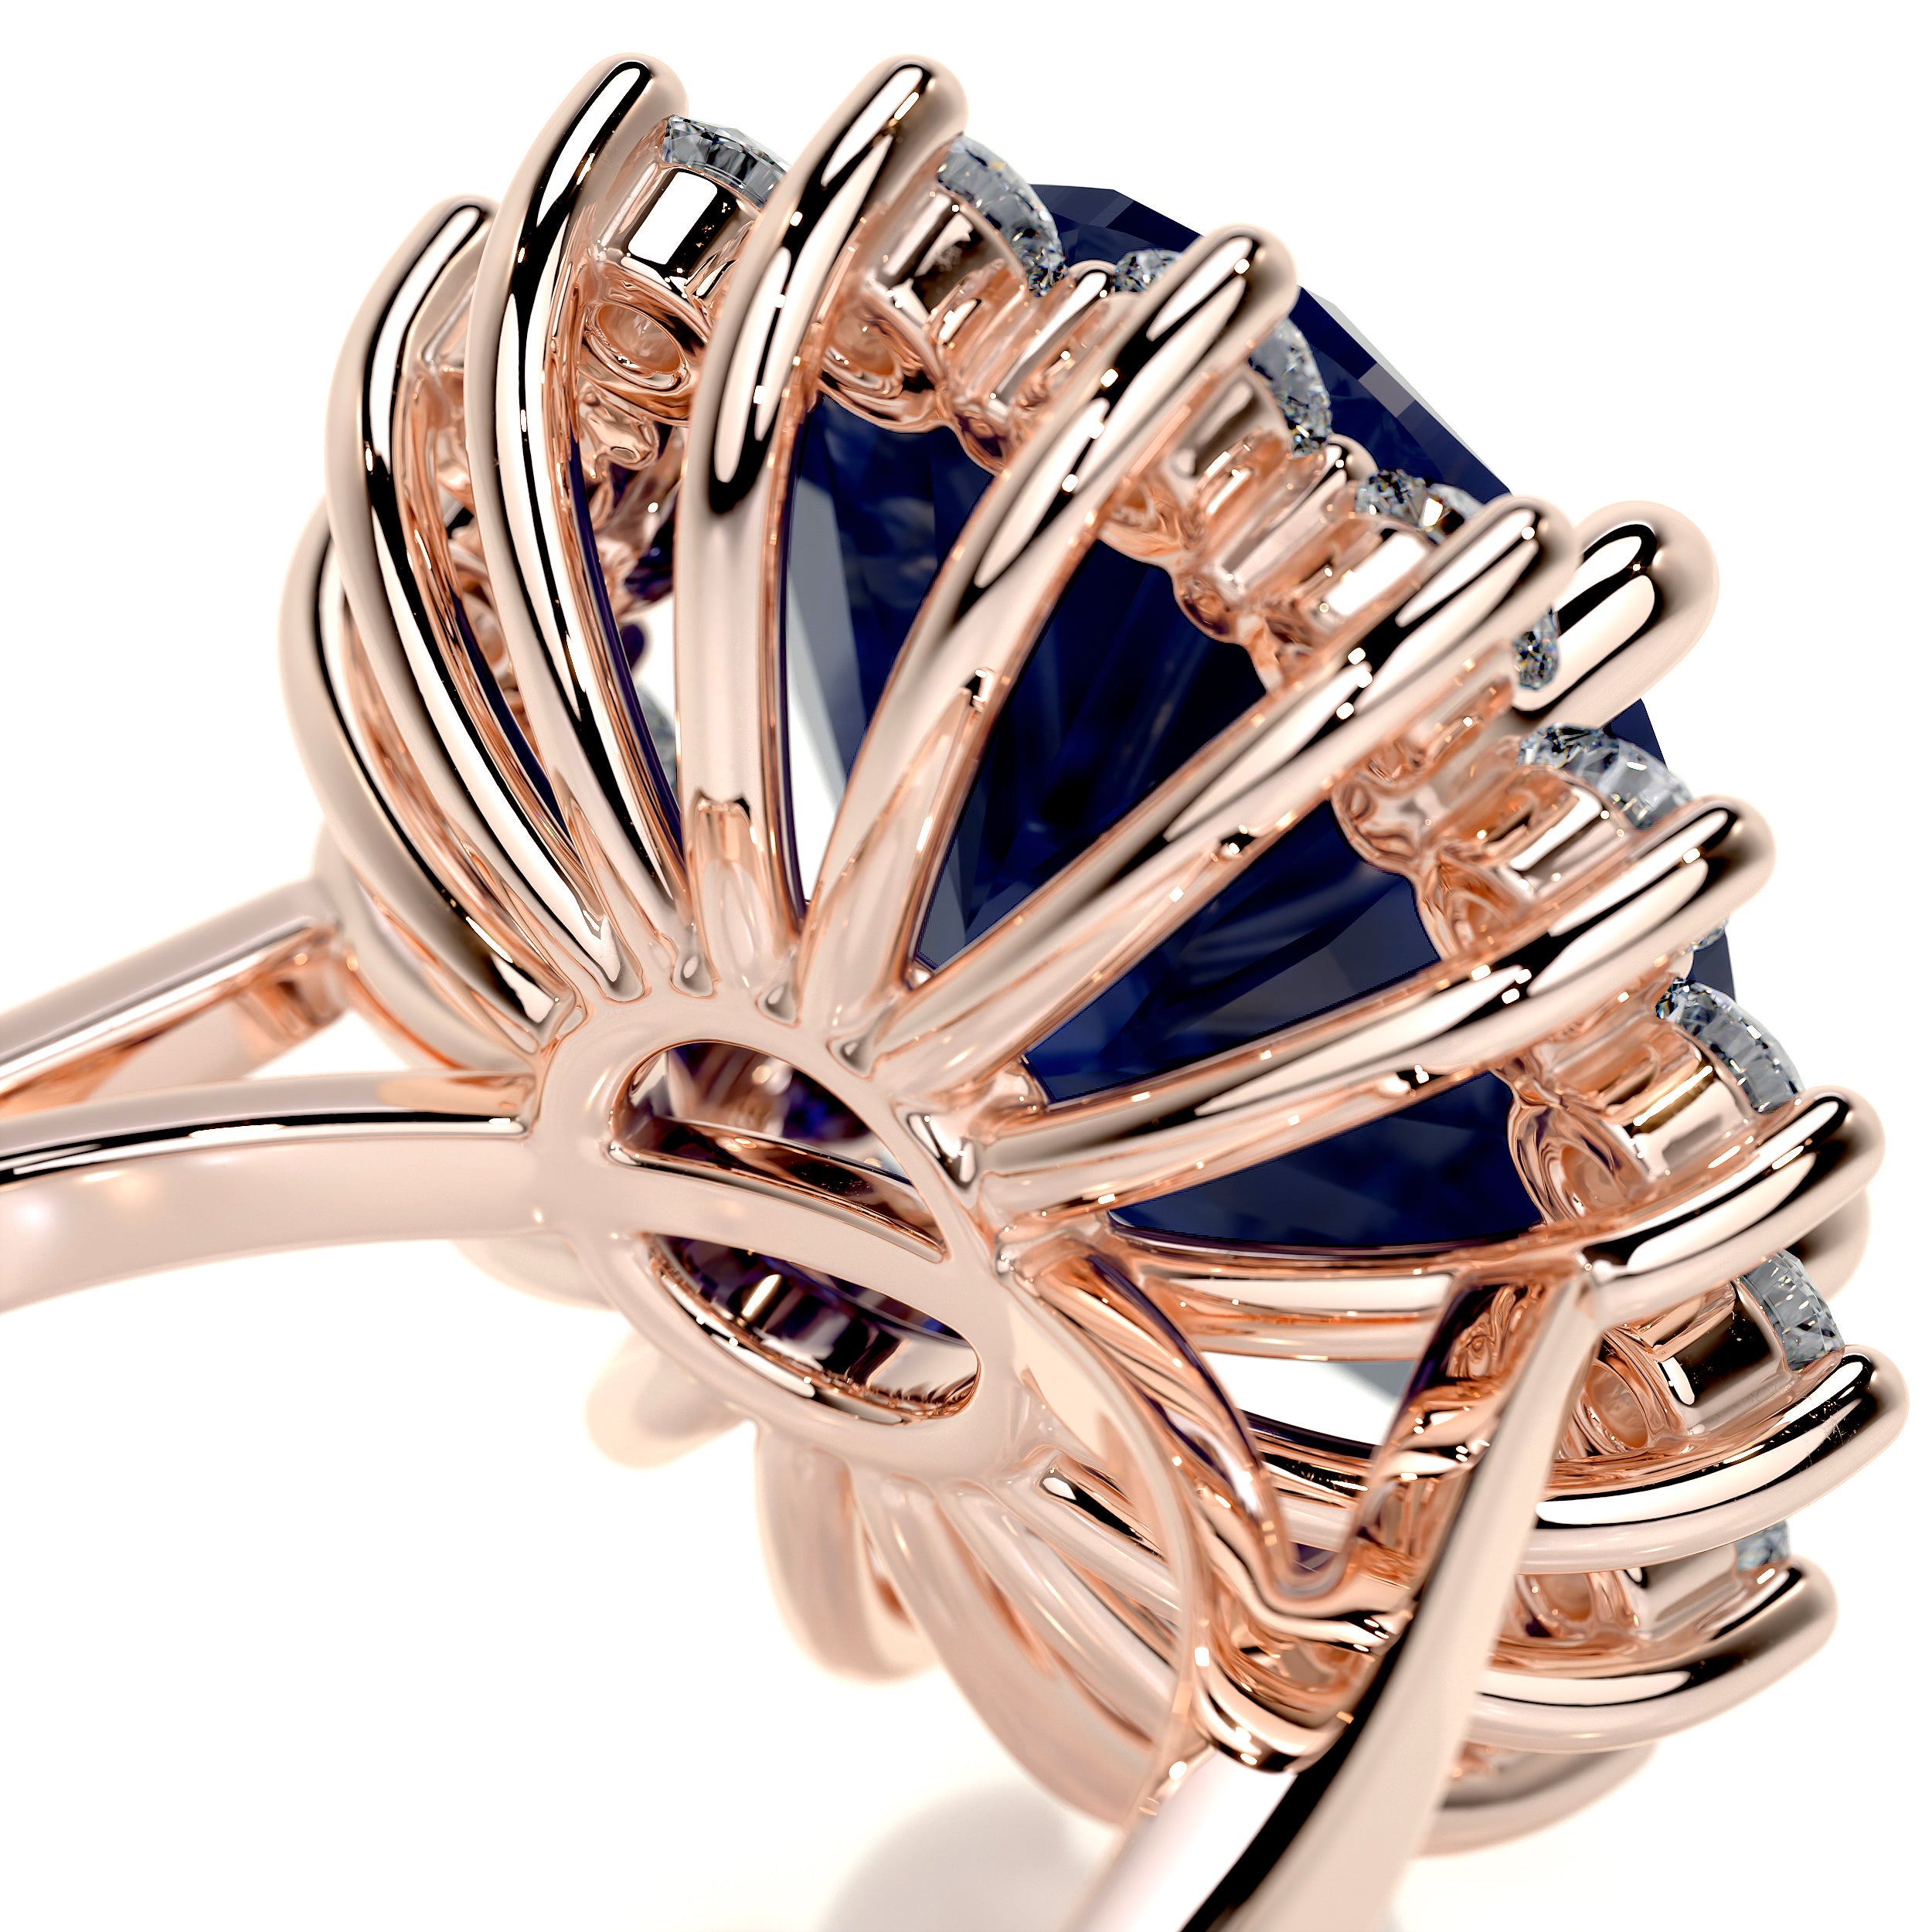 Lyn Gemstone & Diamonds Ring   (7 Carat) - 14K Rose Gold